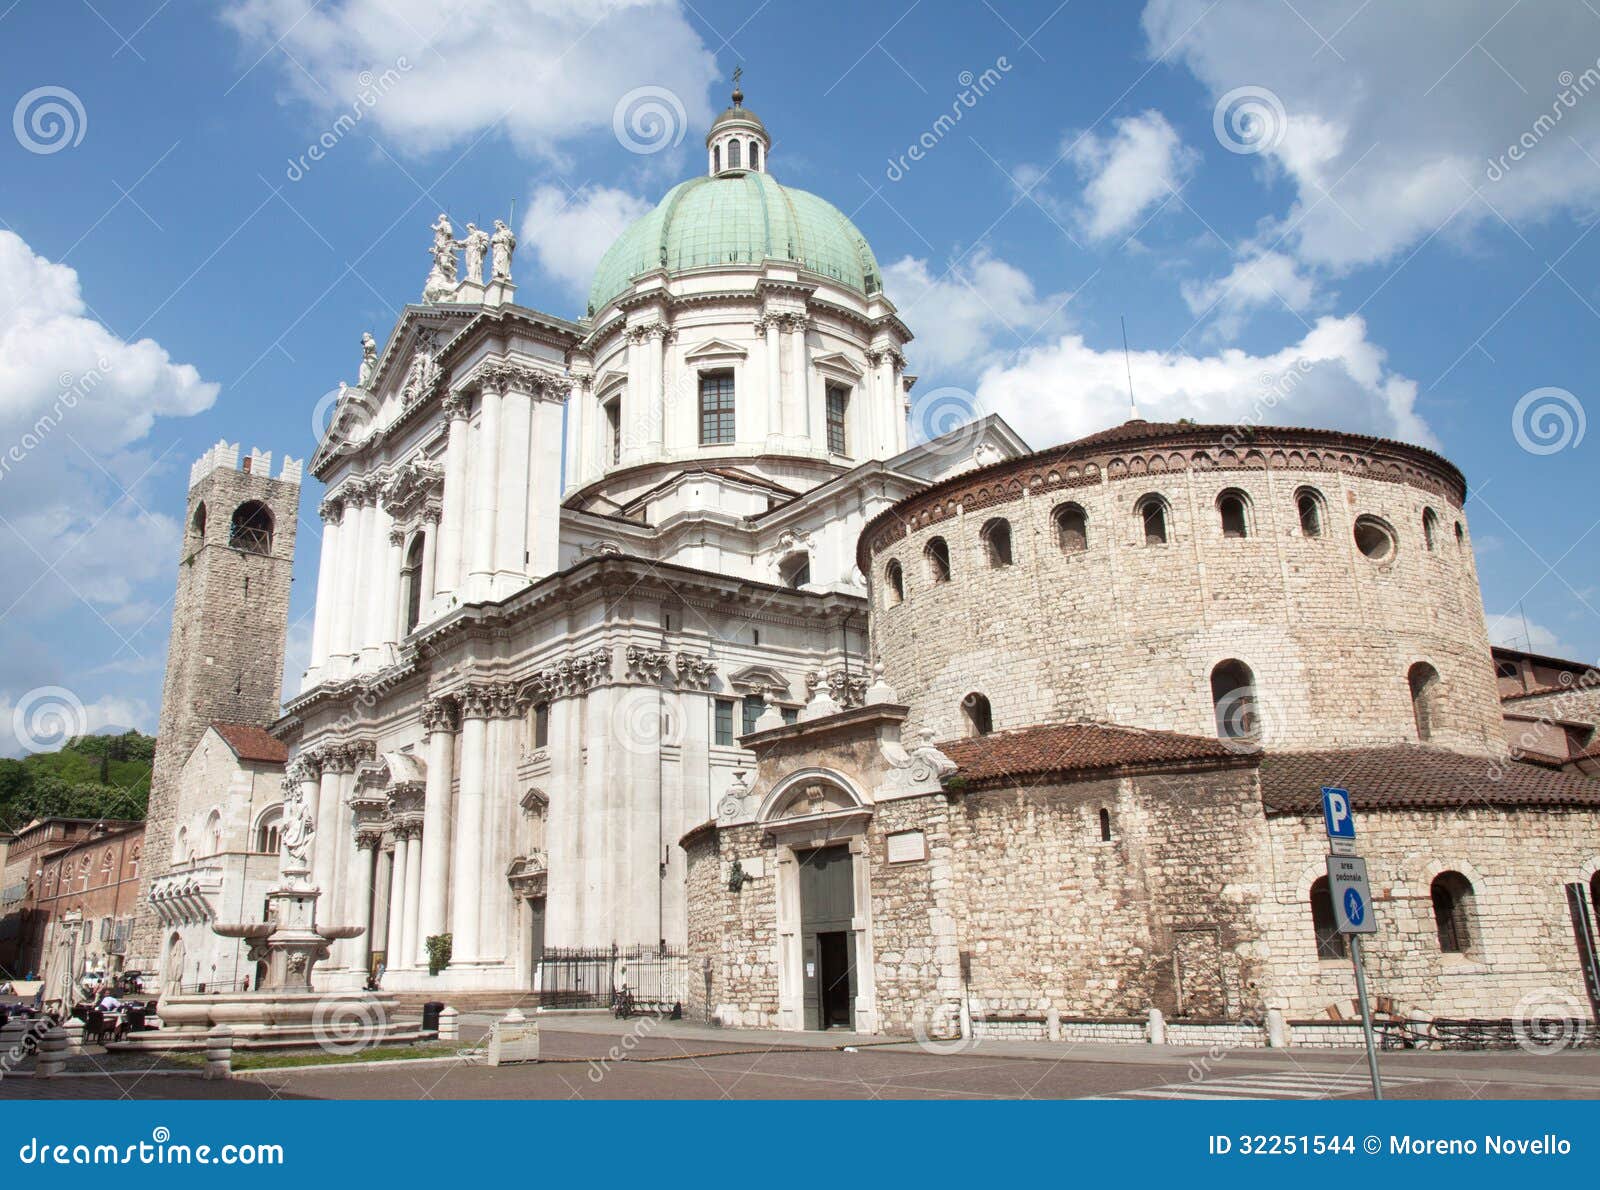 Brescia Cathedral stock photo. Image of facade, brescia - 32251544